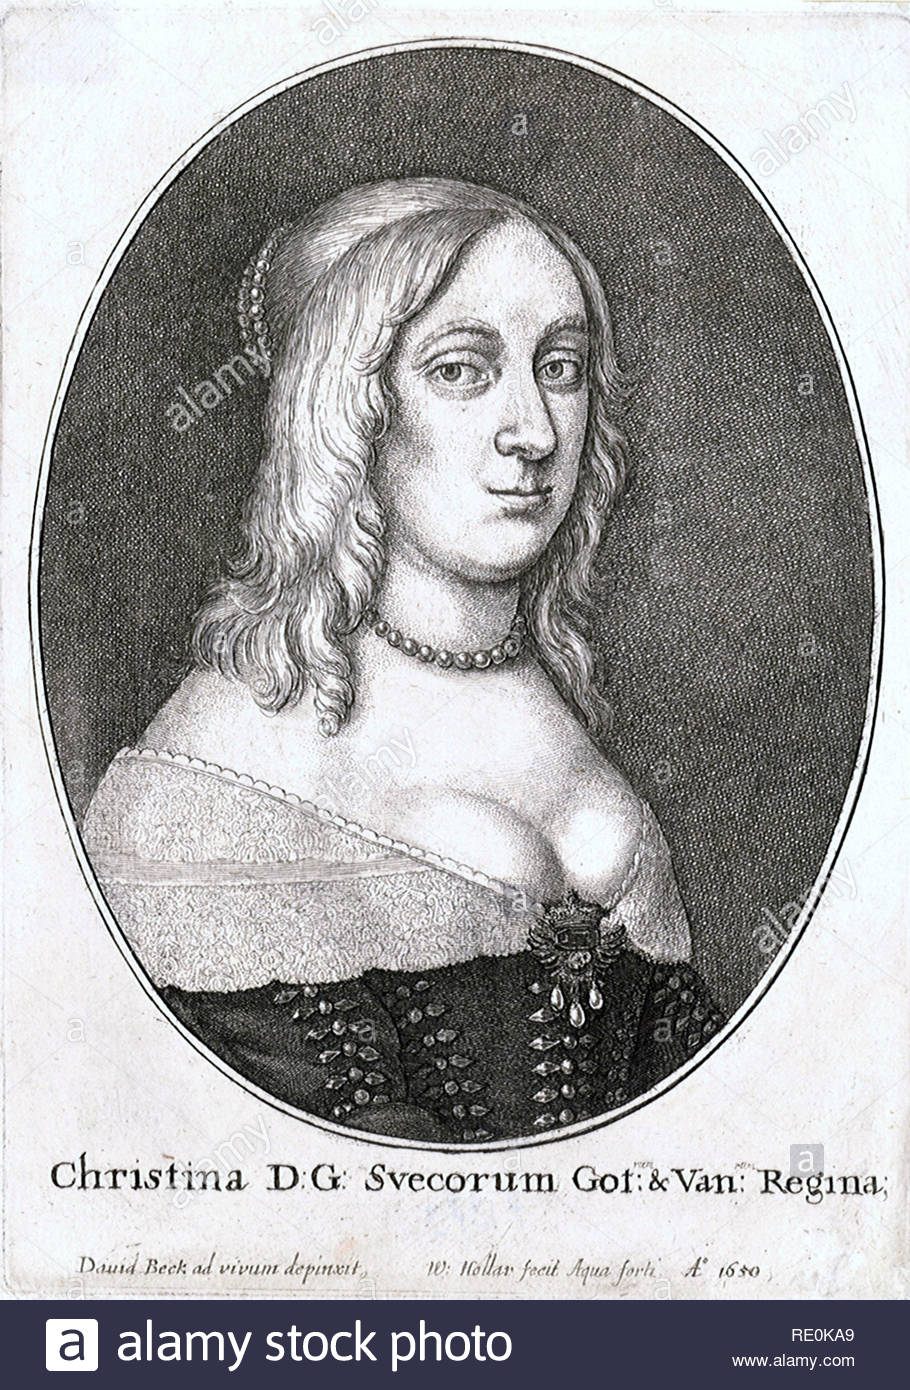 Christina, 1626 - 1689, l'unica superstite figlio legittimo del re Gustav II Adolph e sua moglie Maria Eleonora di Brandeburgo, regnò come Regina di Svezia dal 1632 fino alla sua abdicazione nel 1654, l'attacco da incisore boemo Wenceslaus Hollar dal 1650 Foto Stock